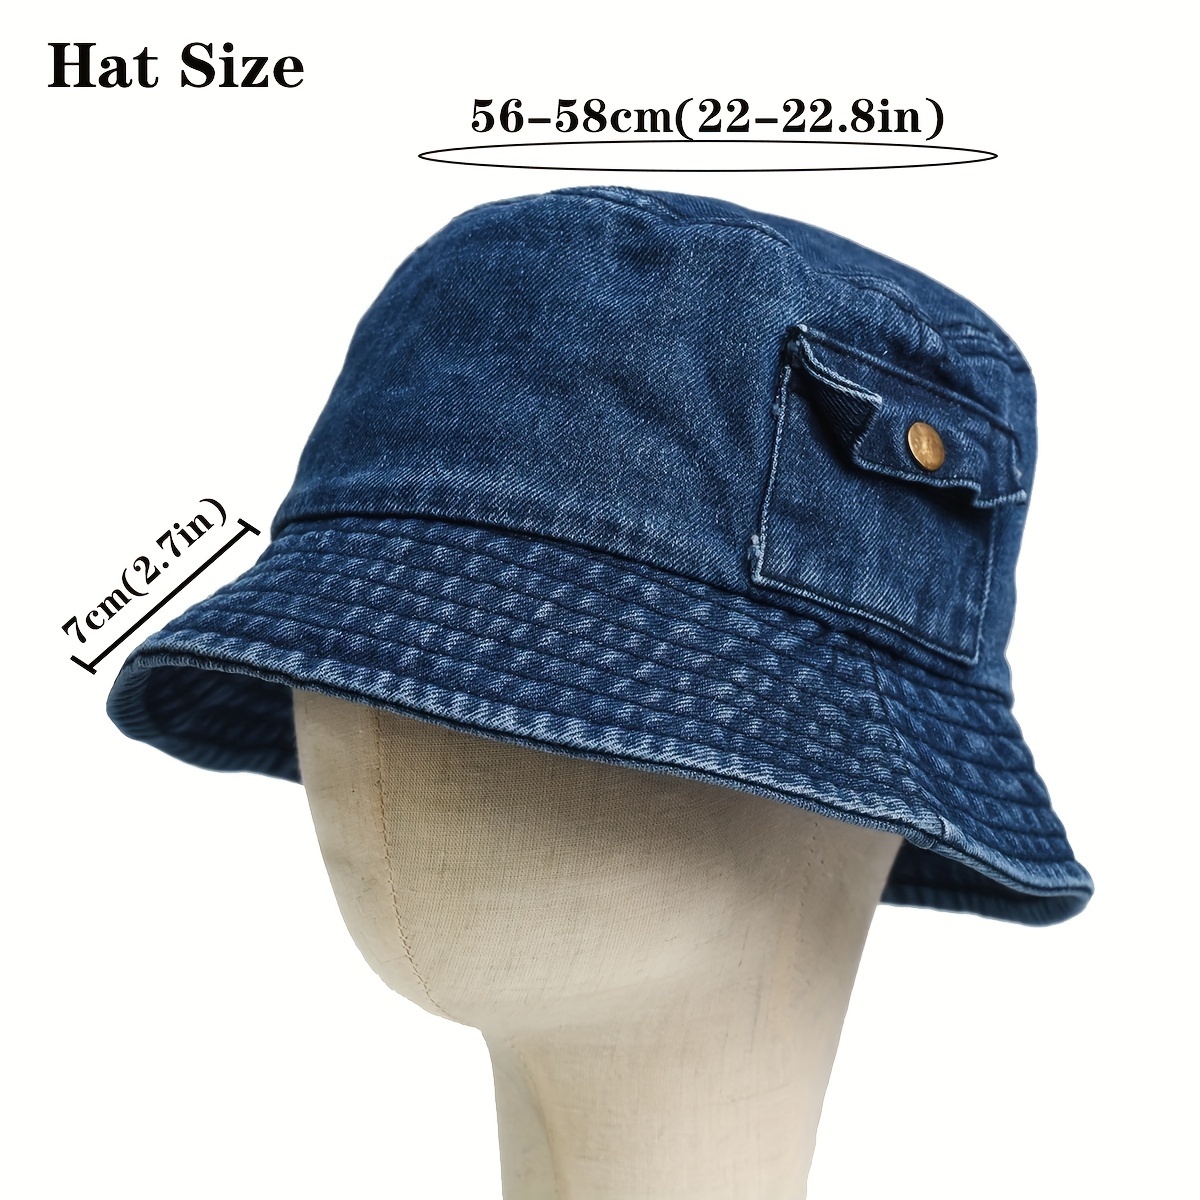 Denim Vintage Bucket Hat | Japanese Streetwear |  56-58cm